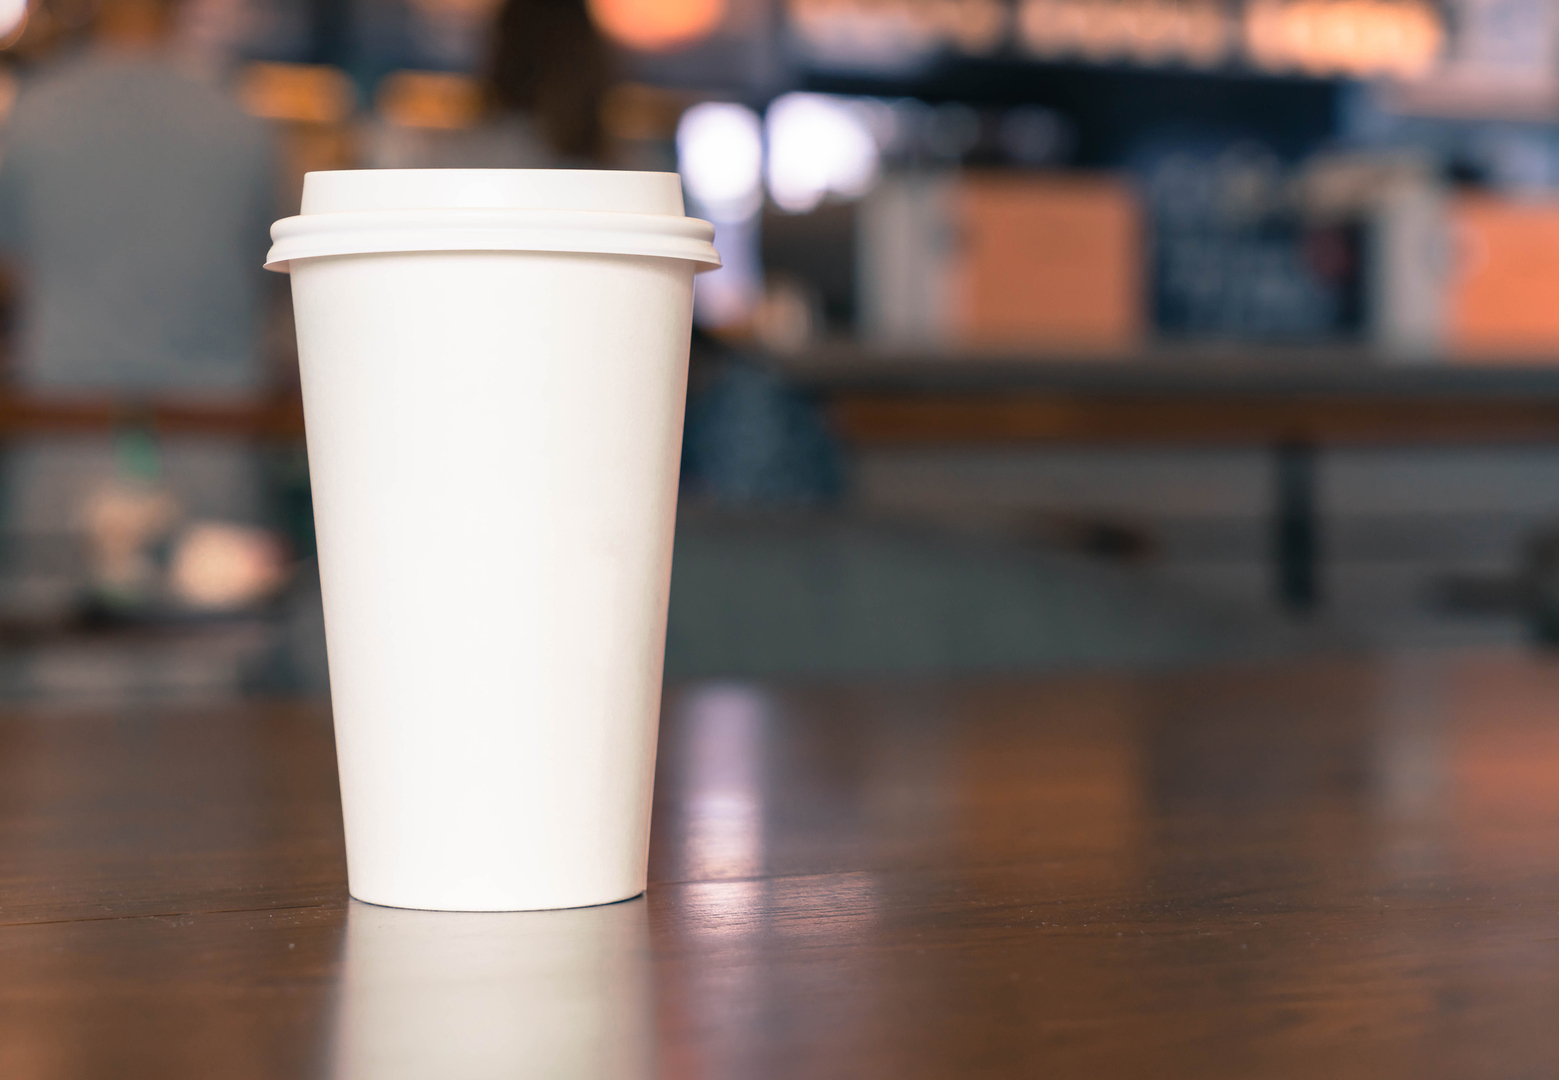 أكواب الاستخدام الواحد تلقي بتريليونات الجزيئات البلاستيكية المجهرية في قهوتنا